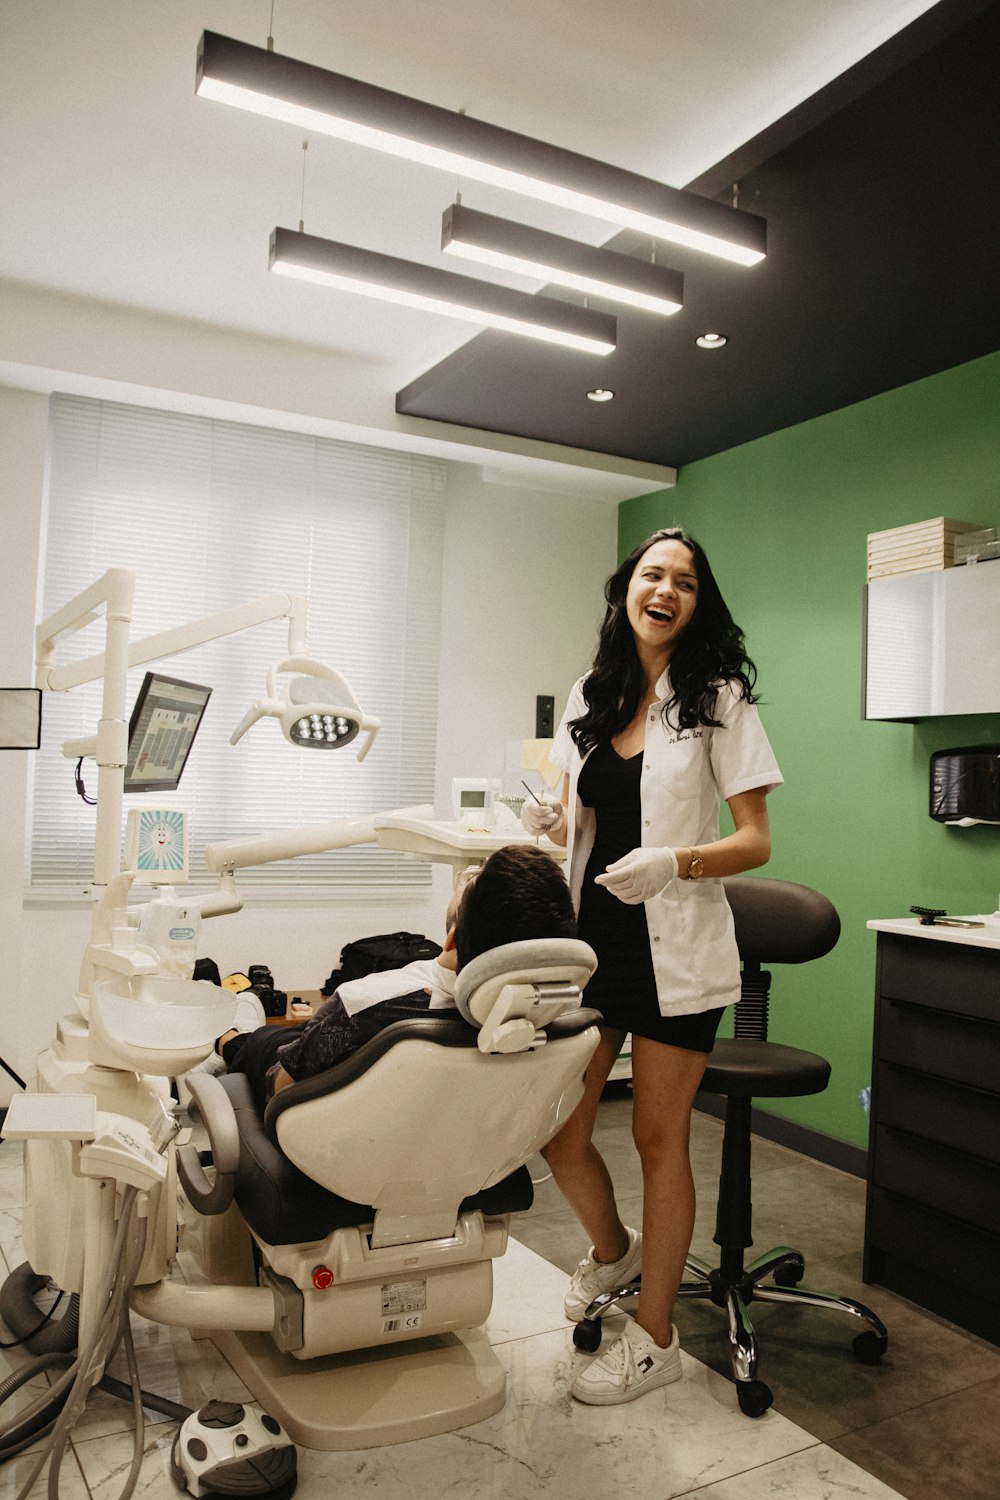 Bilder zum Thema Zahnarztstuhl  Kostenlose Bilder auf Unsplash  herunterladen